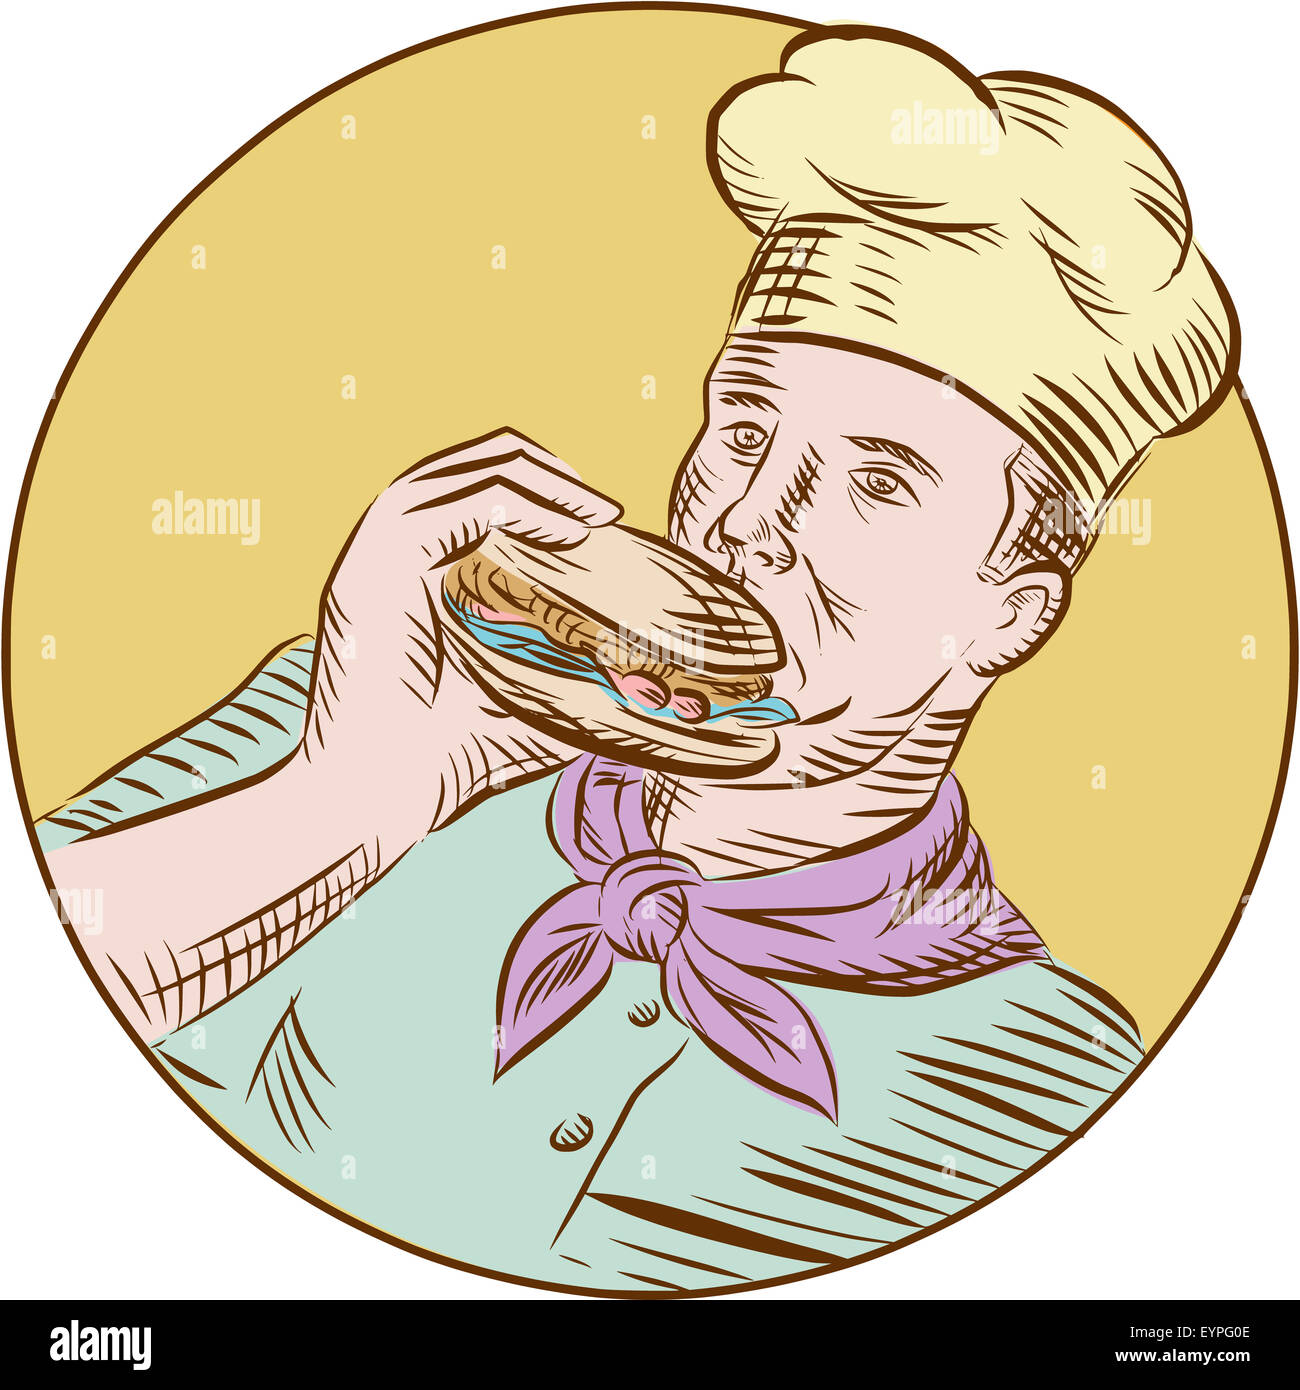 Gravure Gravure illustration style artisanal d'un chef cuisinier baker manger burger à la recherche sur le côté situé à l'intérieur du cercle. Banque D'Images